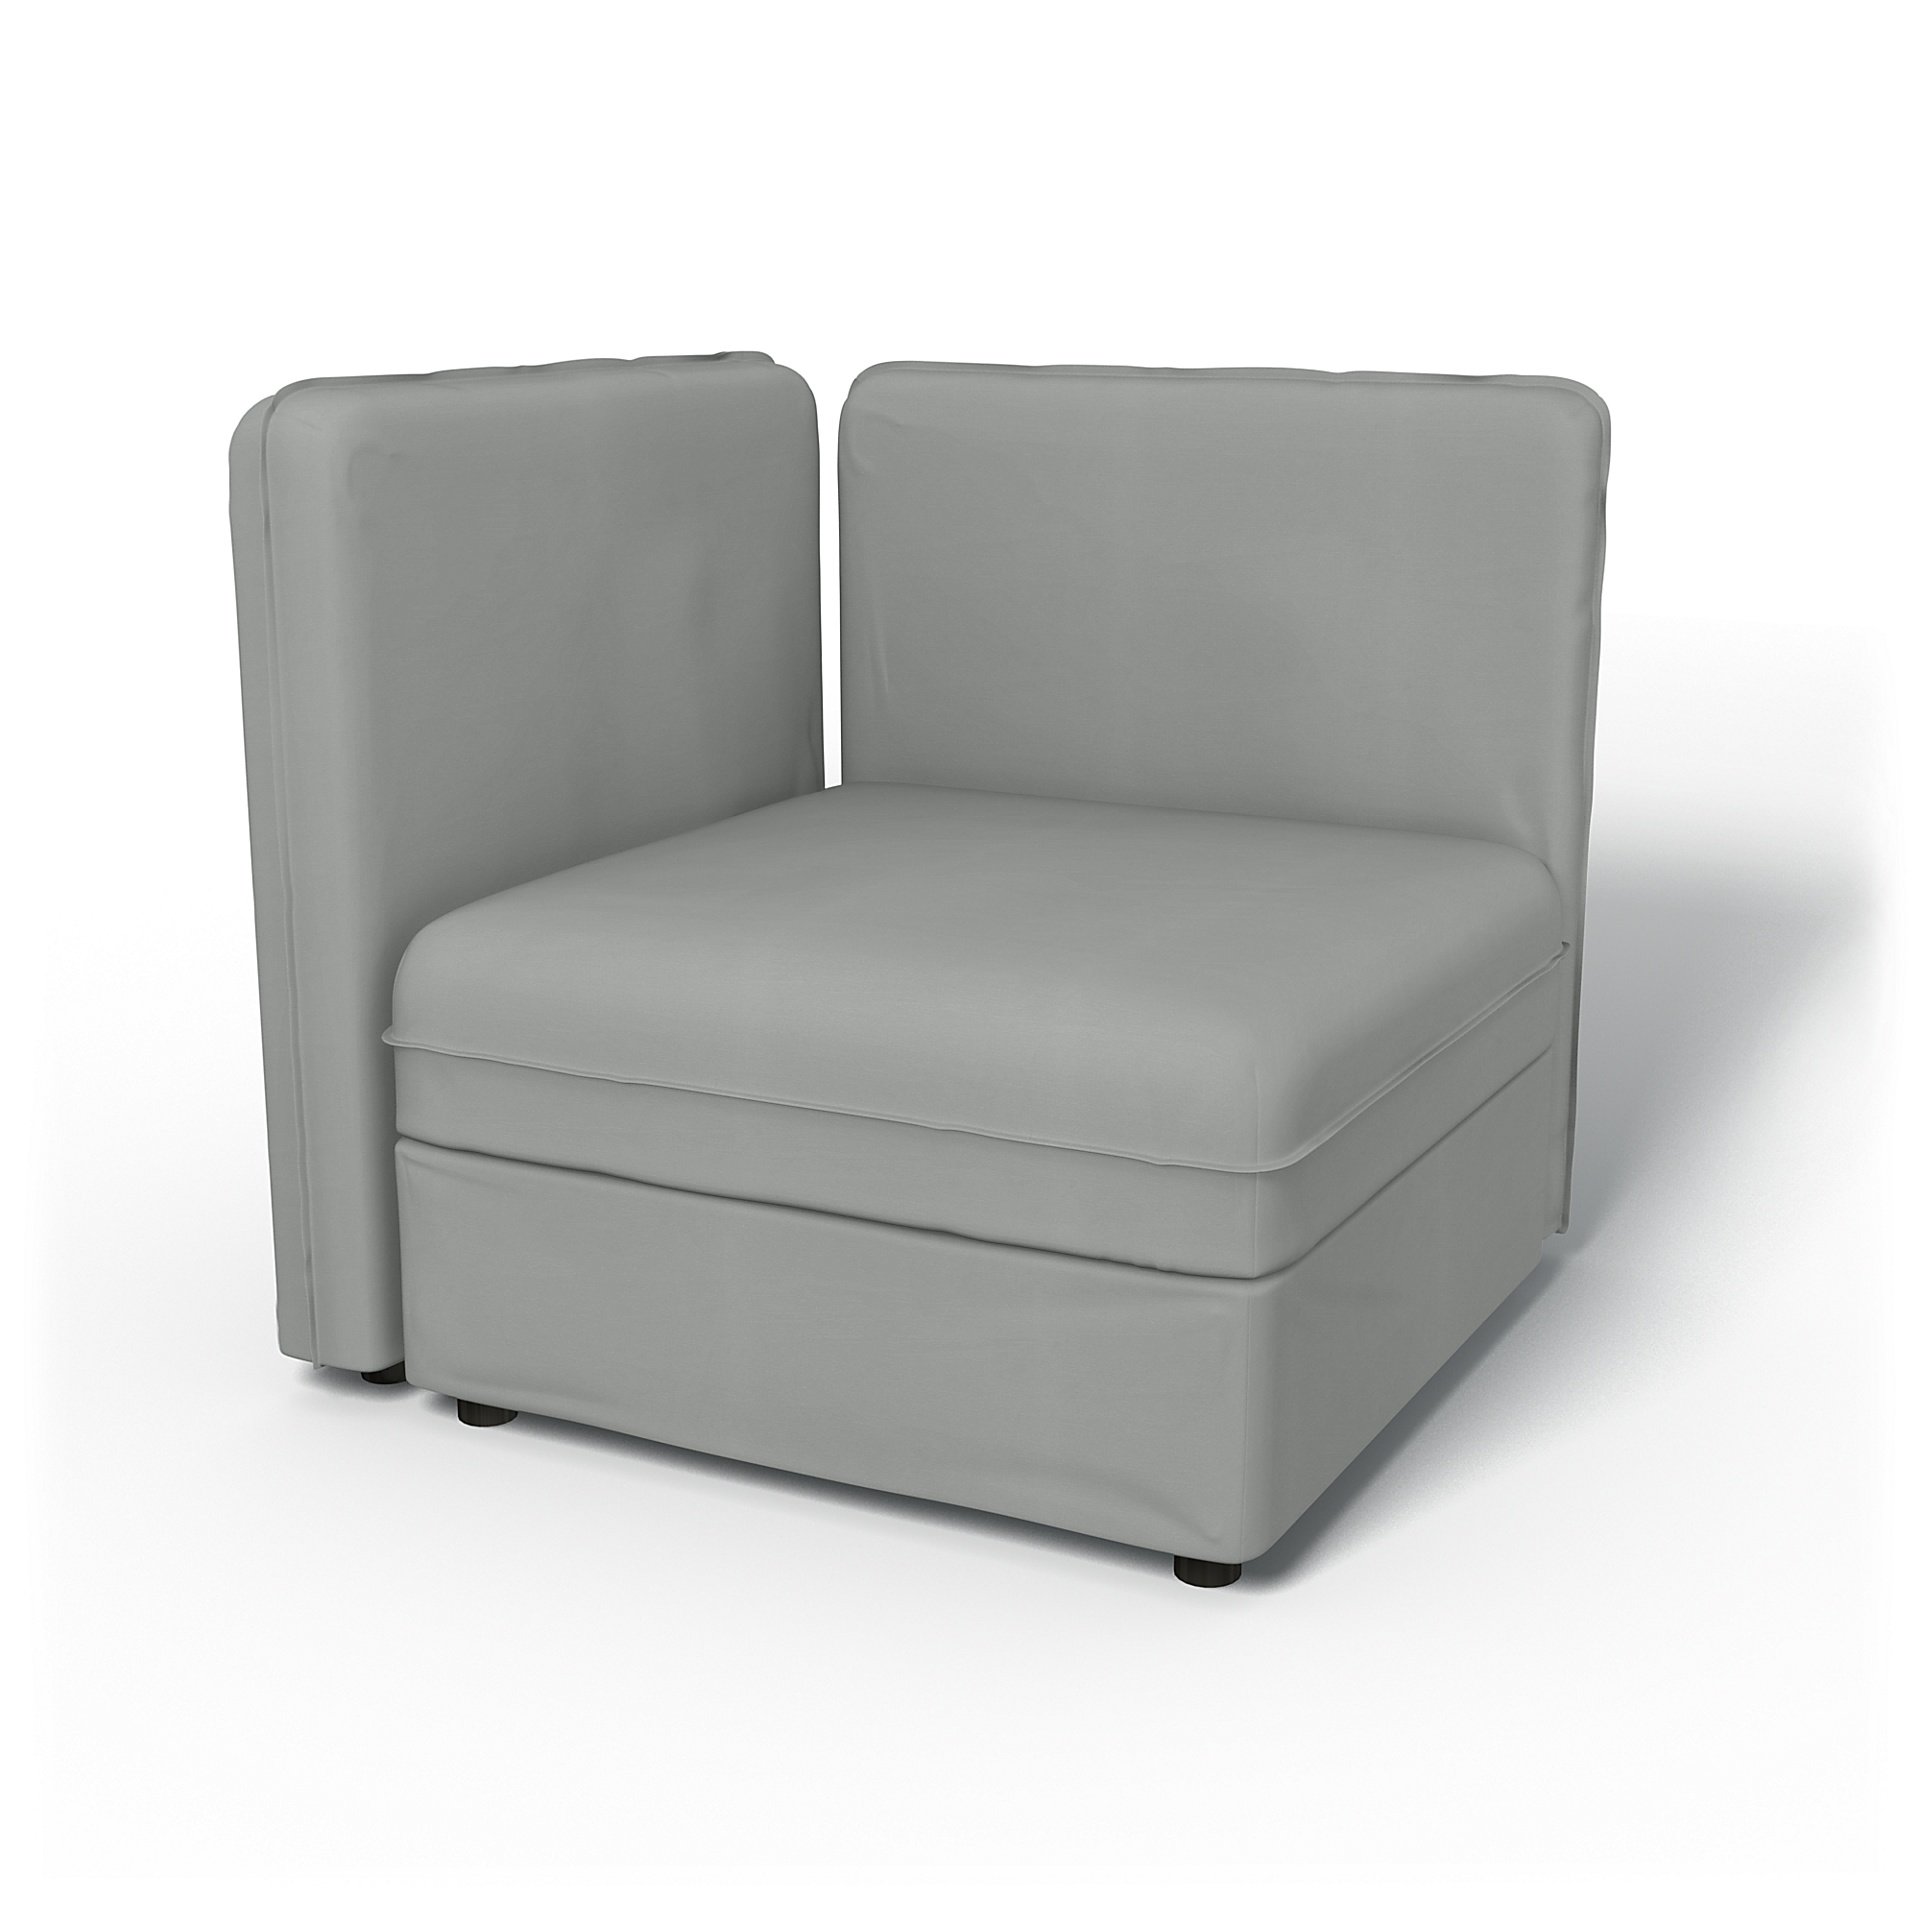 IKEA - Överdrag till Vallentuna 1-sitssektion med låg rygg och förvaring (80x80cm), Silver Grey, Bomull - Bemz